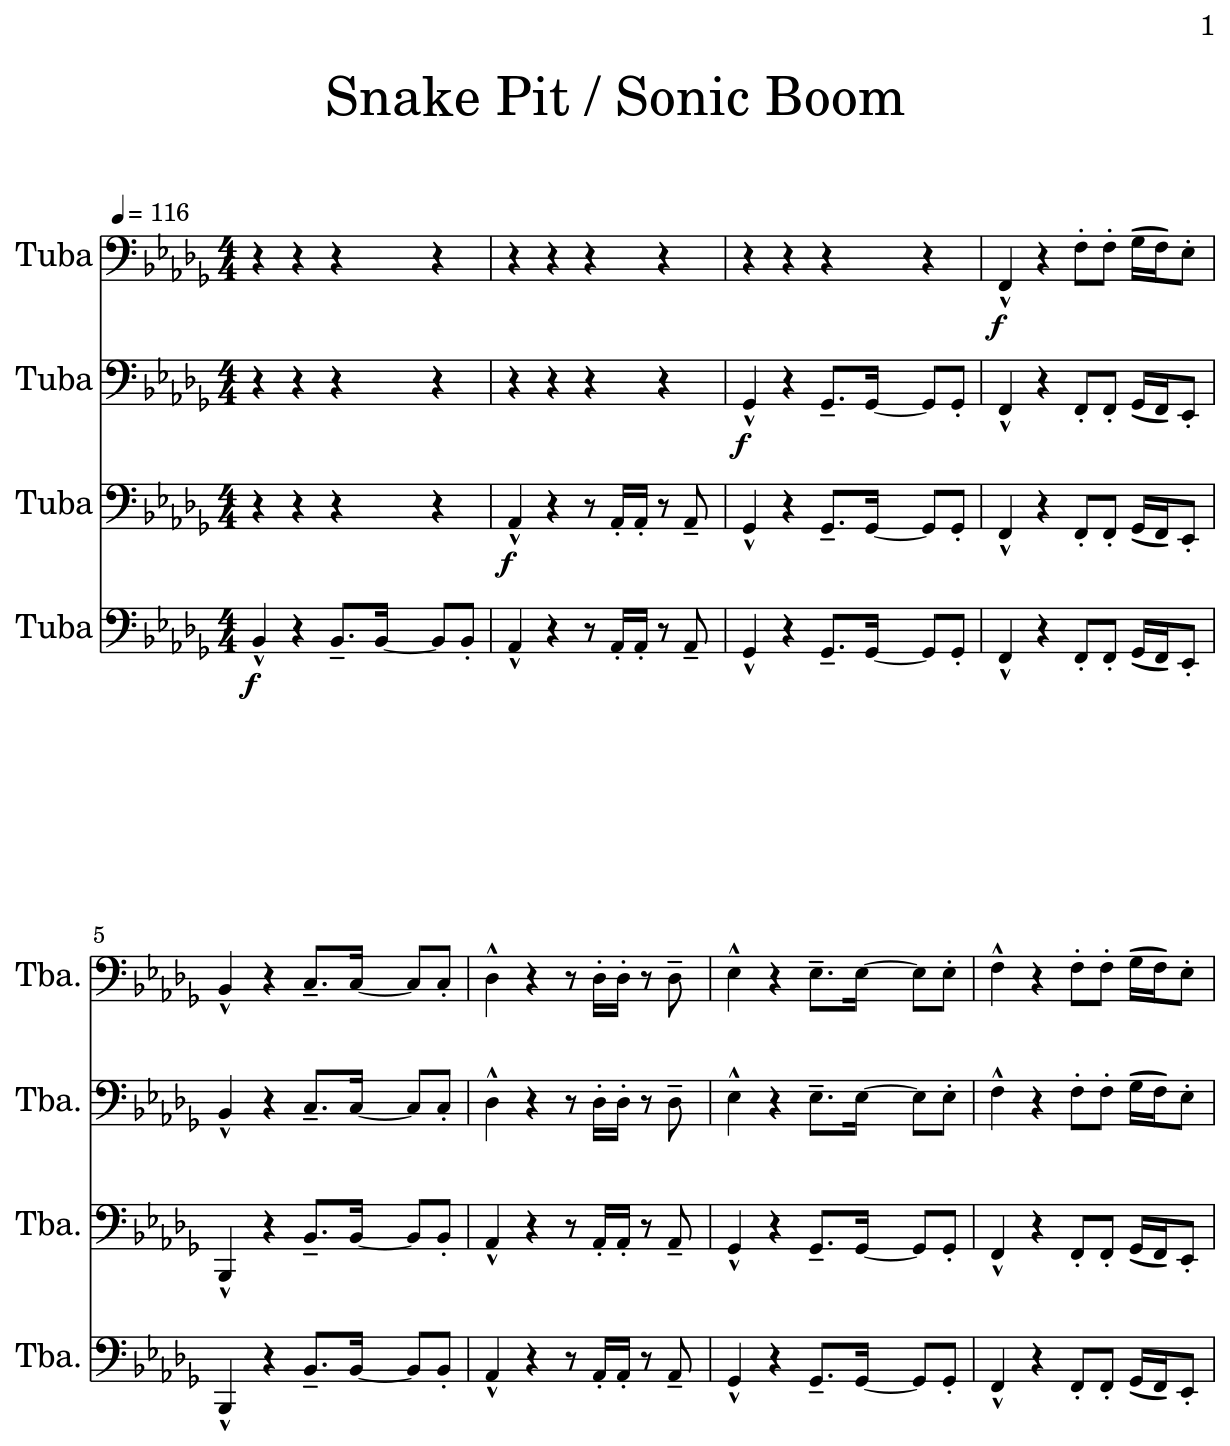 Snake Pit / Sonic Boom - Sheet music for Tuba1137 x 1514